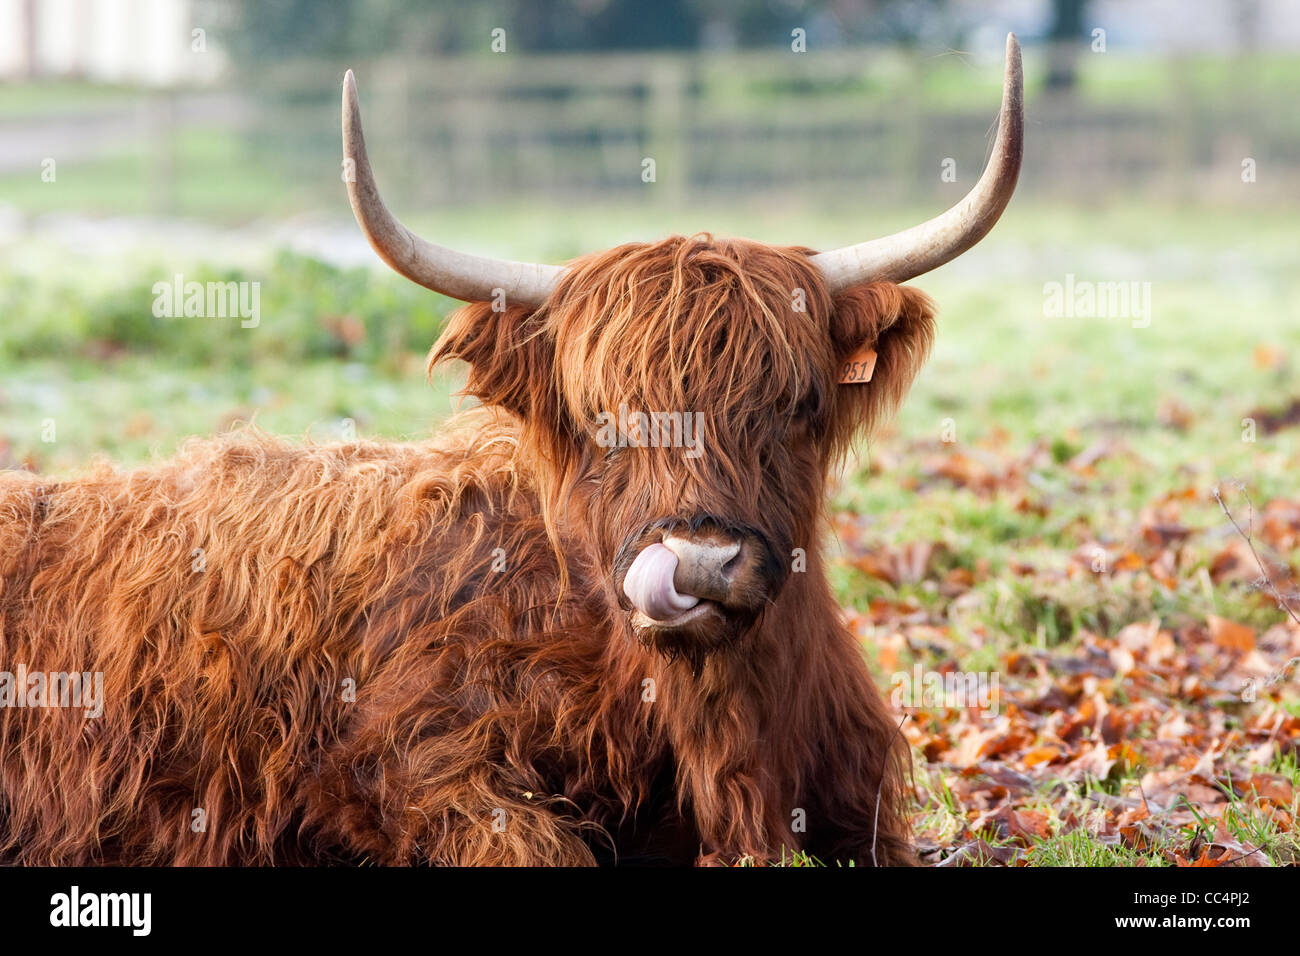 Highland Vaca lamer la nariz estrecha en frosty día de otoño Foto de stock